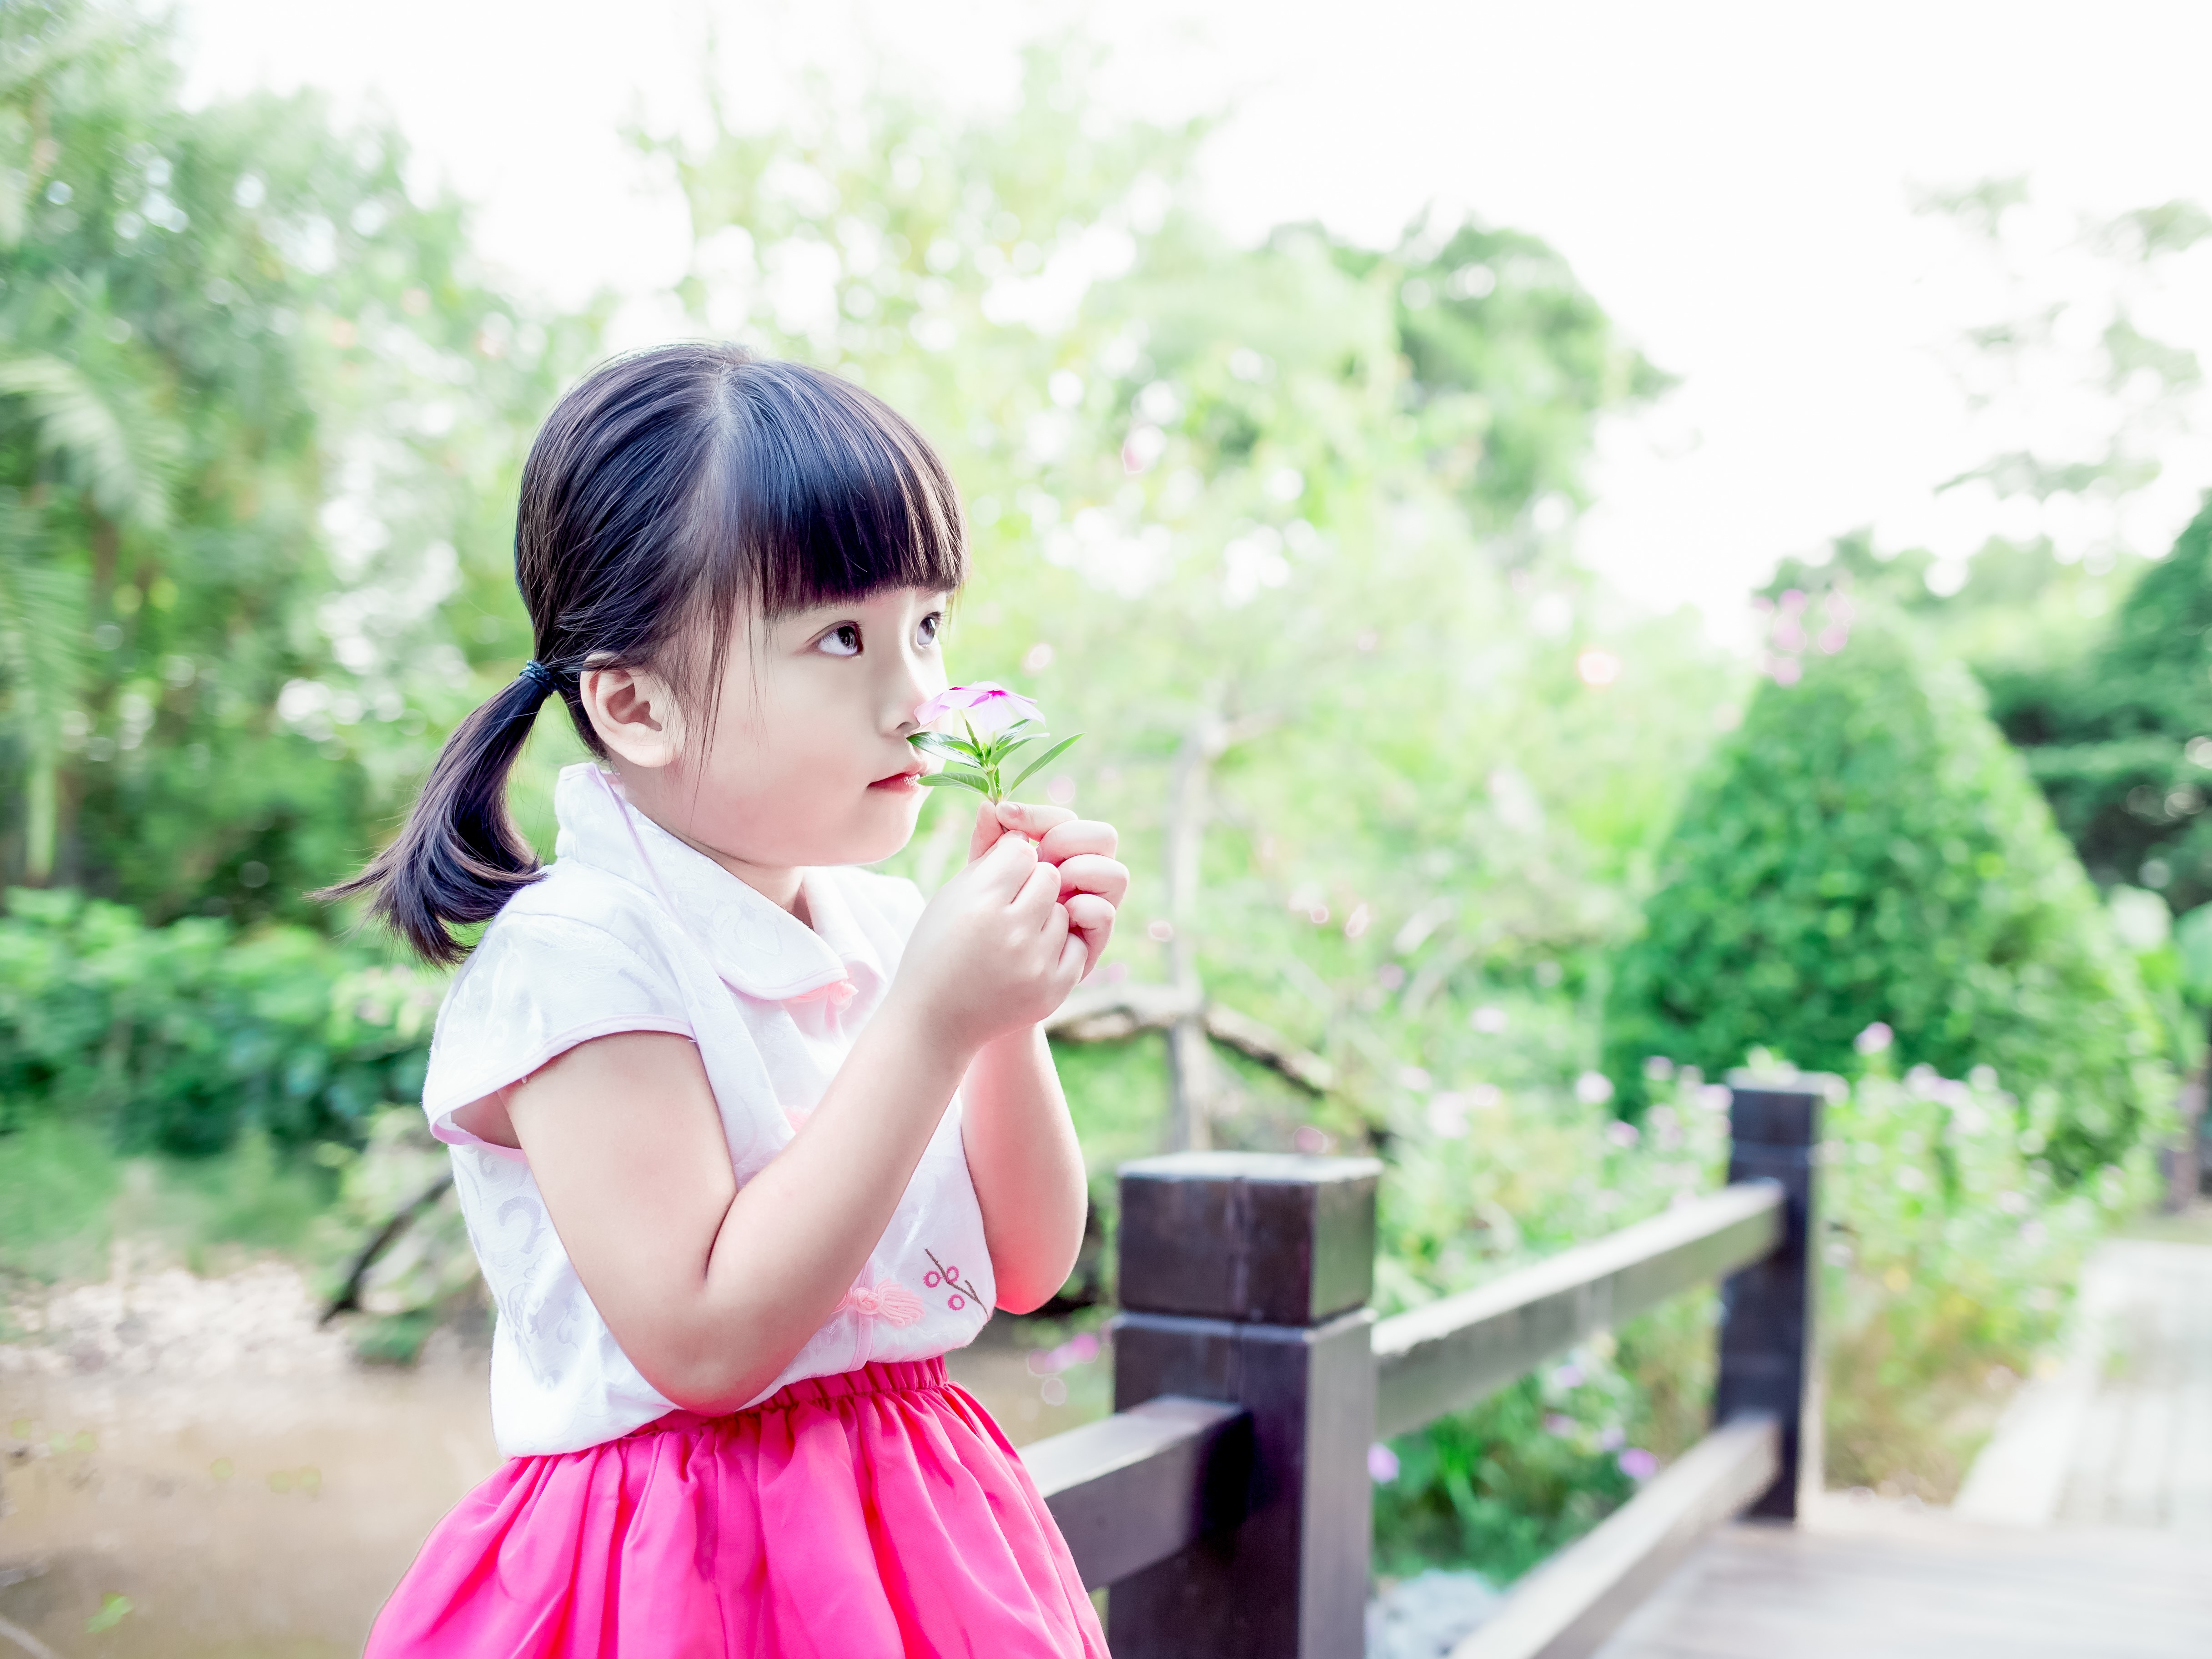 【全广州】自选场景户外儿童摄影 不限服装造型